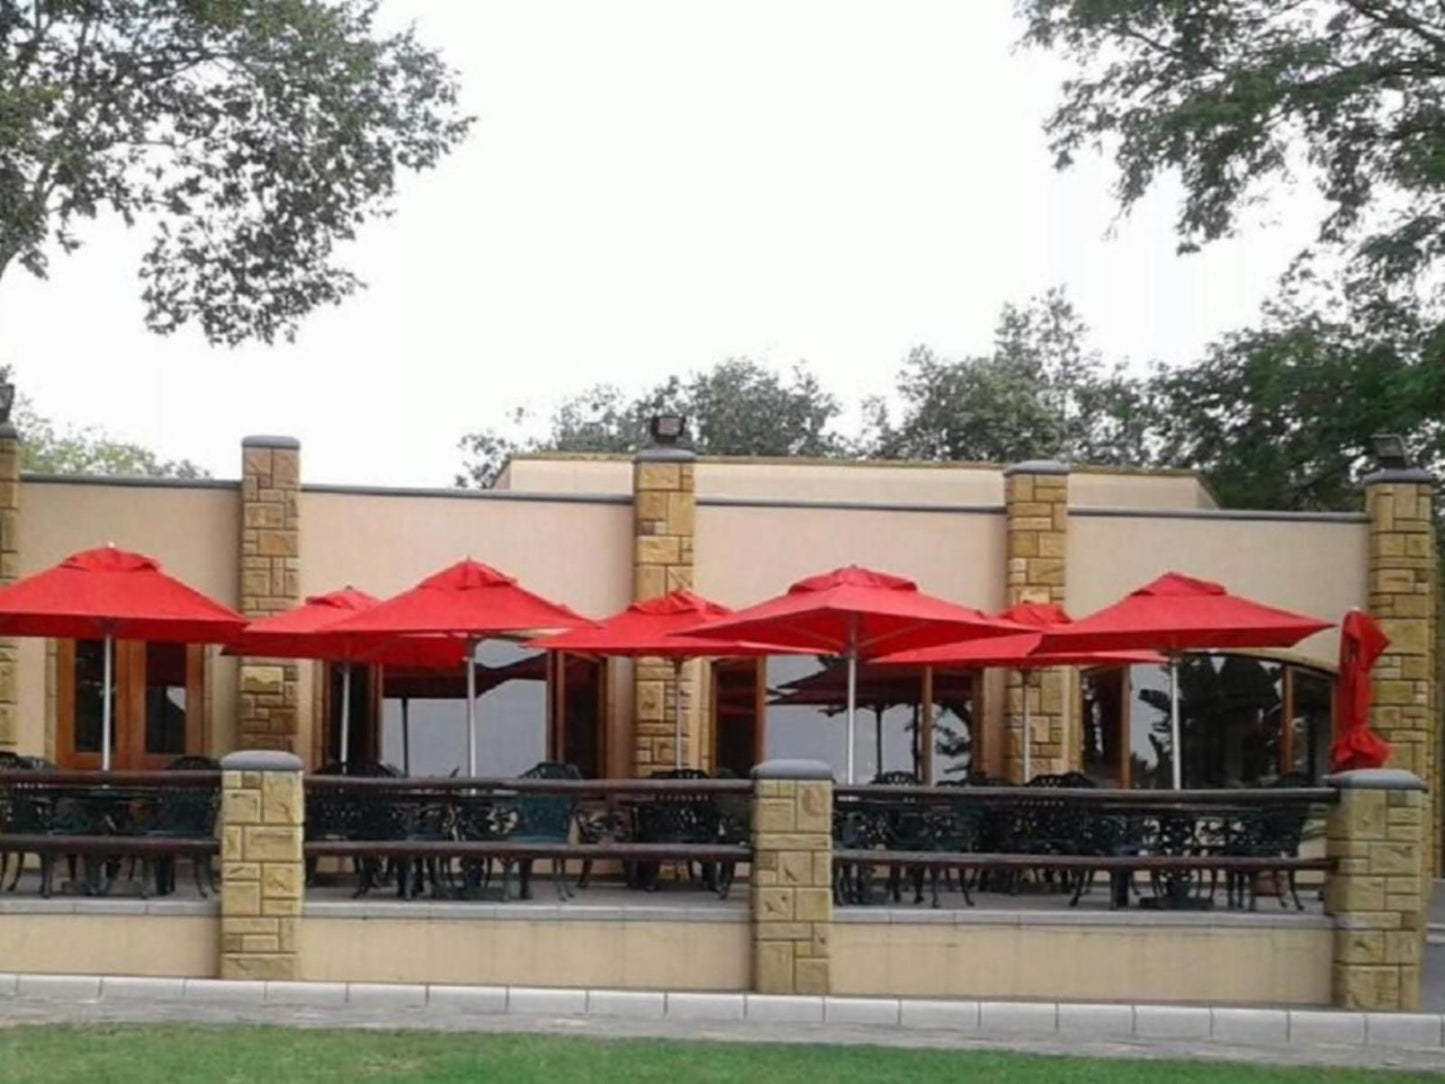 Das Landhaus Guest Lodge Dainfern Johannesburg Gauteng South Africa Restaurant, Bar